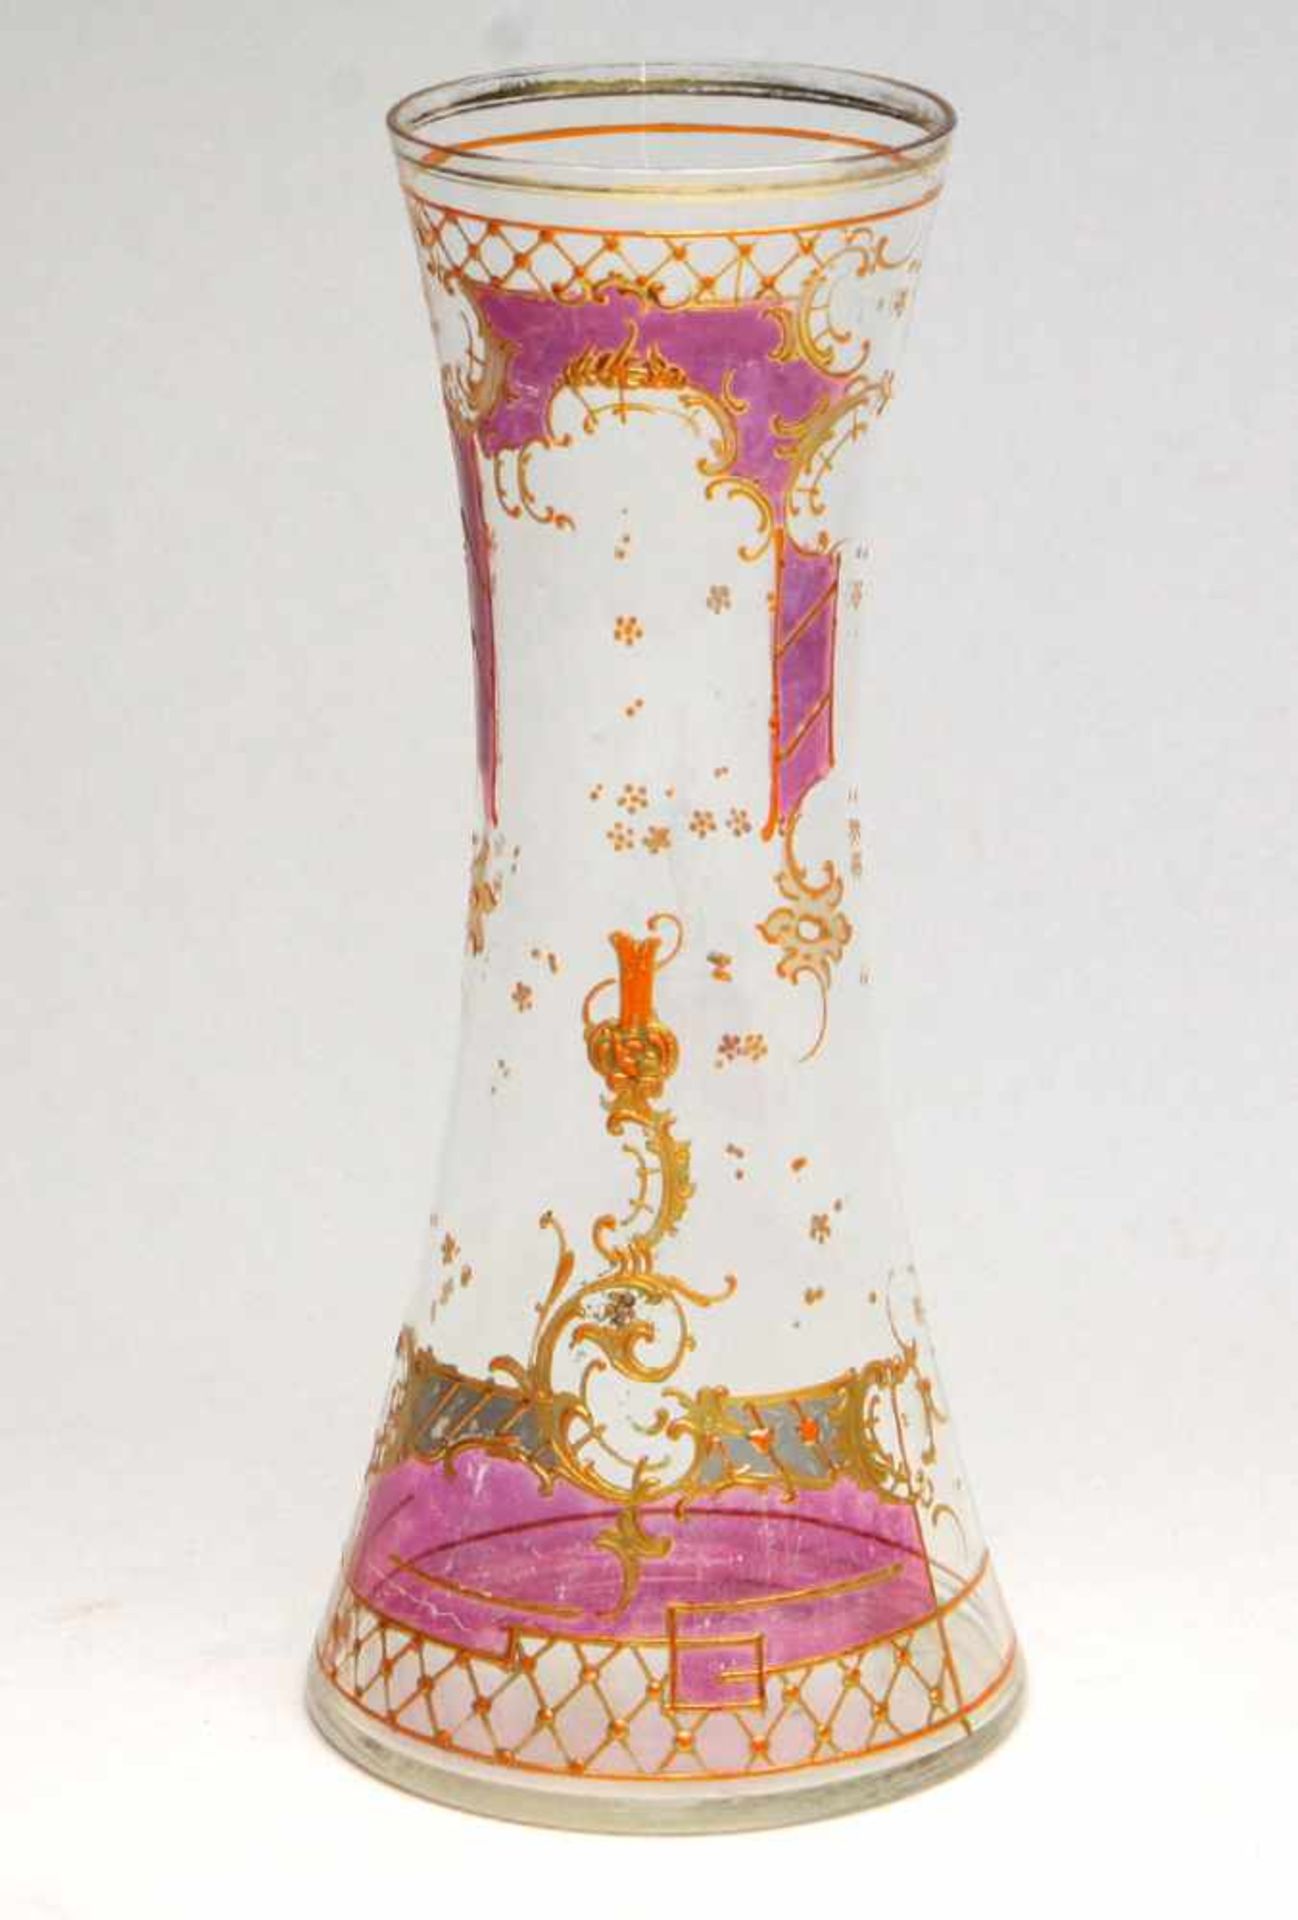 Vase mit Emaillemalereifarbloses Glas in doppelkonischer Form, schauseitig reich mit pastos